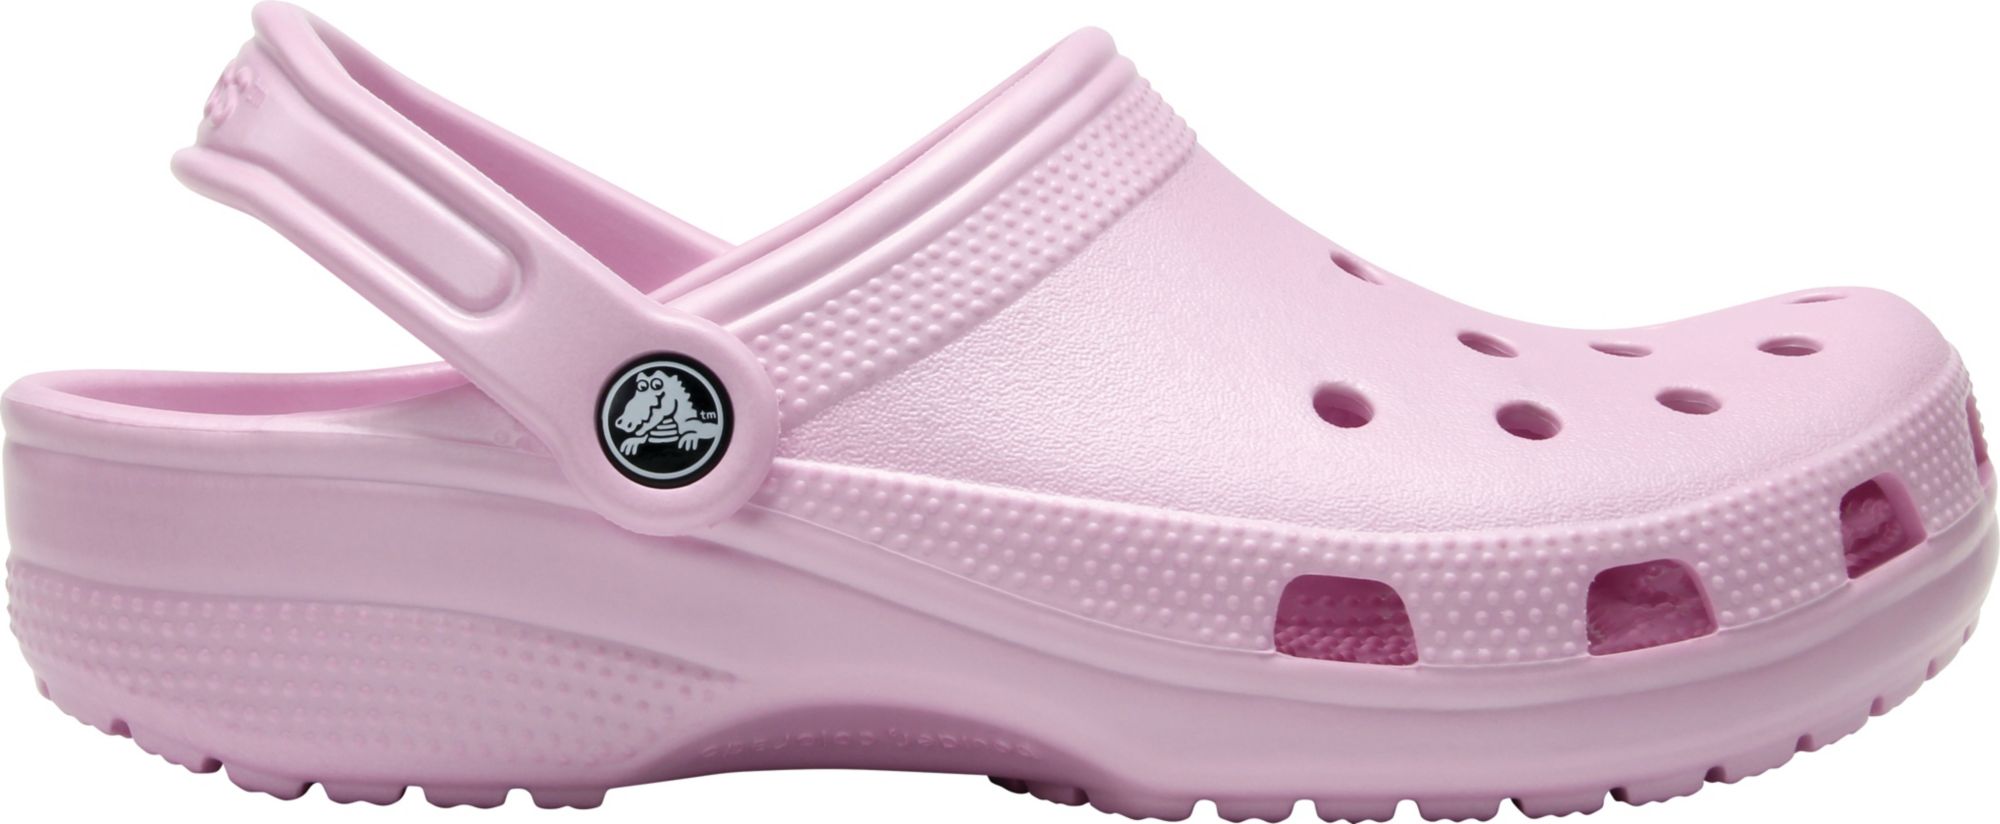 pink crocs size 11 mens